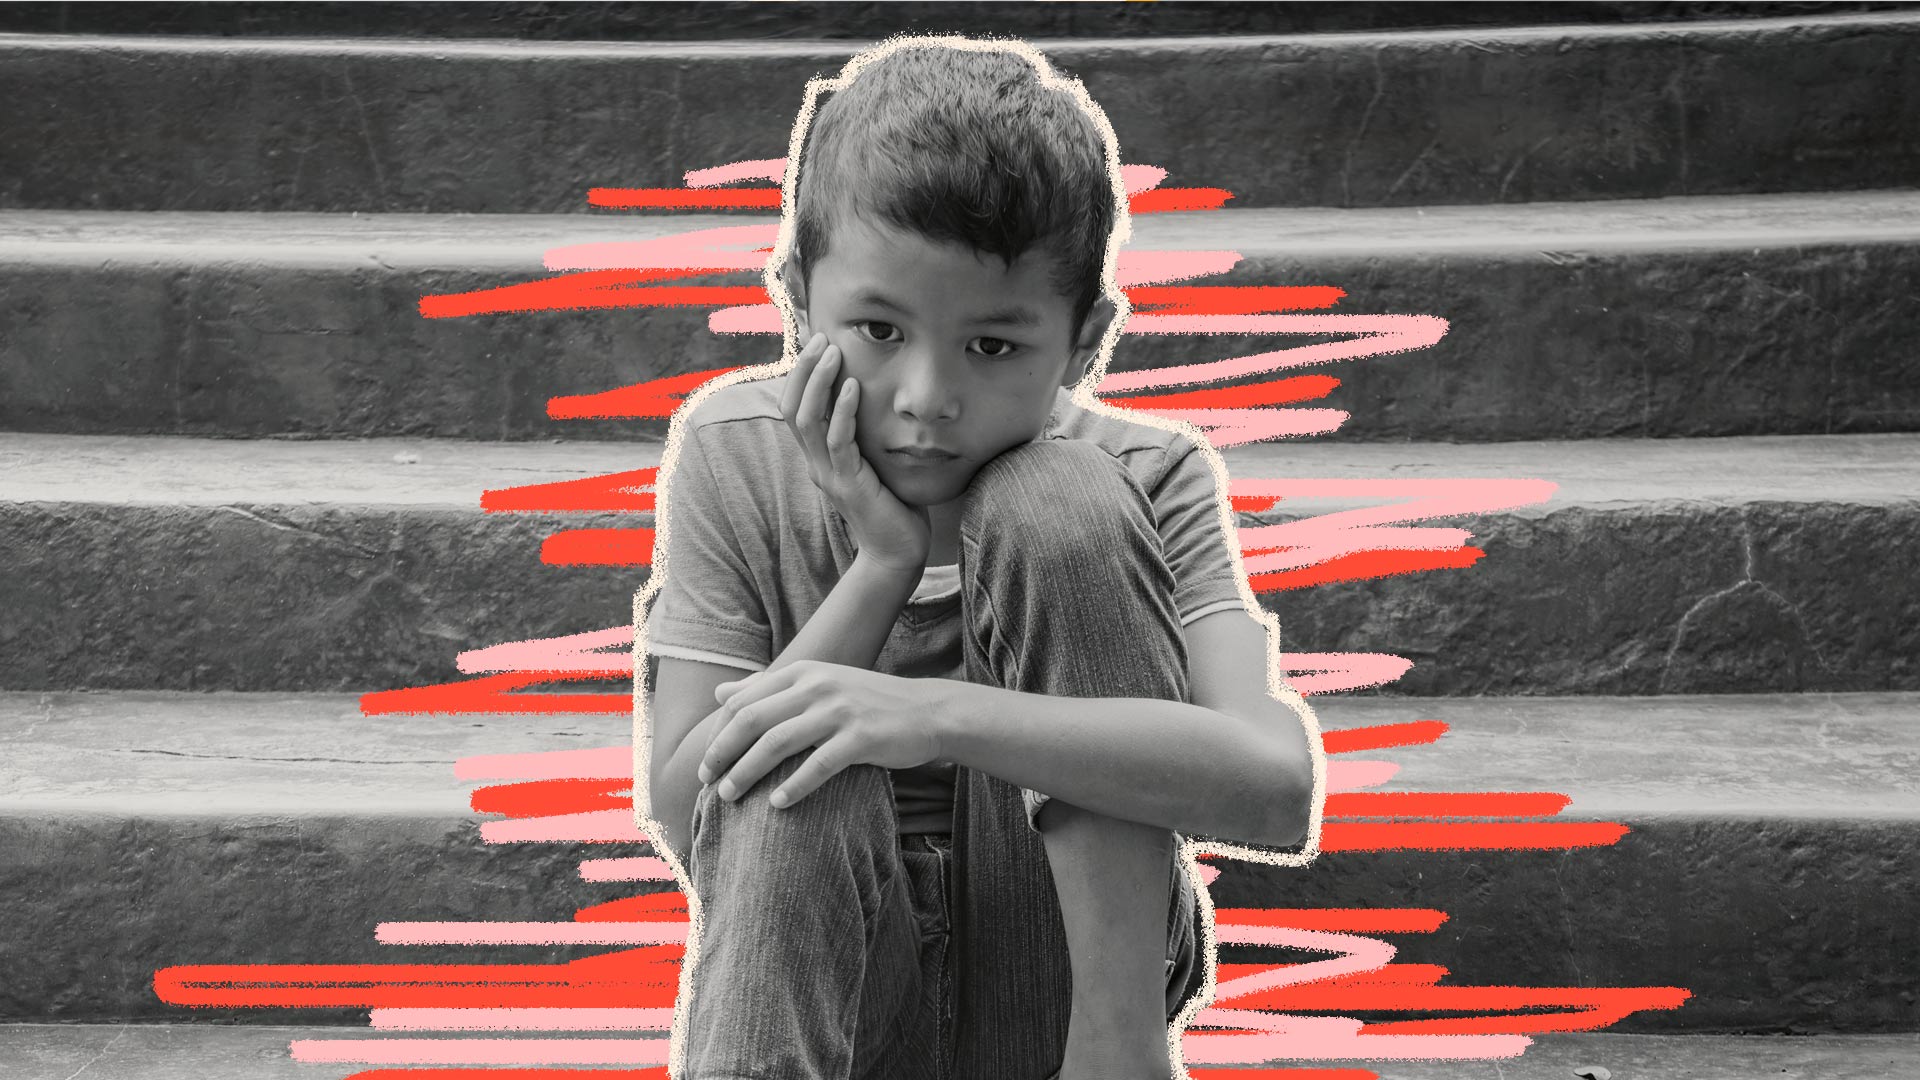 Foto preto e branco de um menino em situação de rua está descalço e sentado em uma escadaria na cidade, com a mão direita apoiando o rosto, com a expressão pensativa e triste.